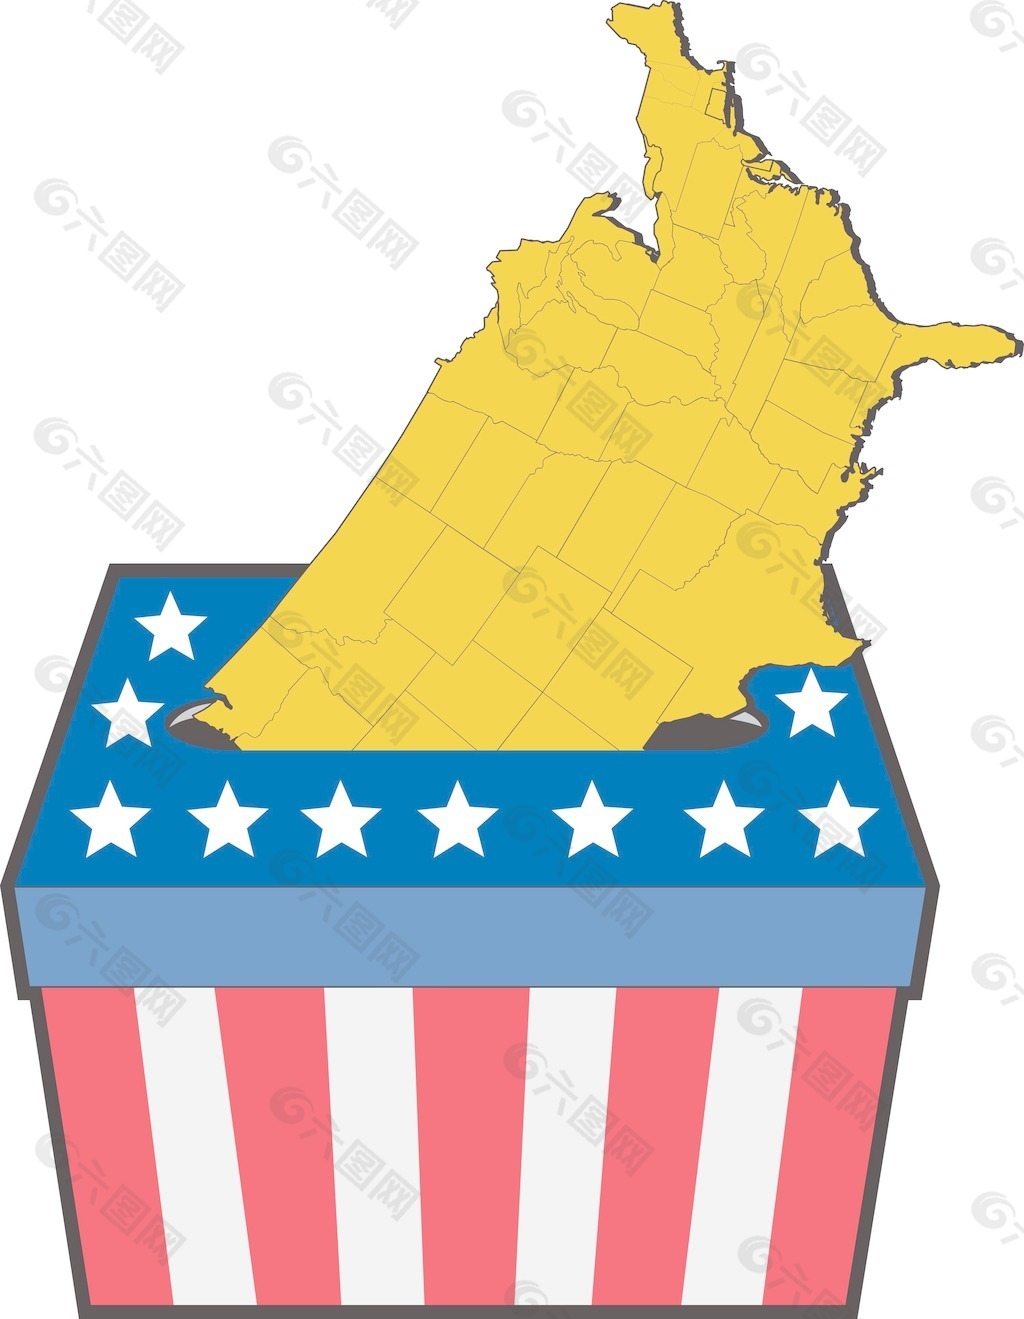 美国大选投票箱美国地图